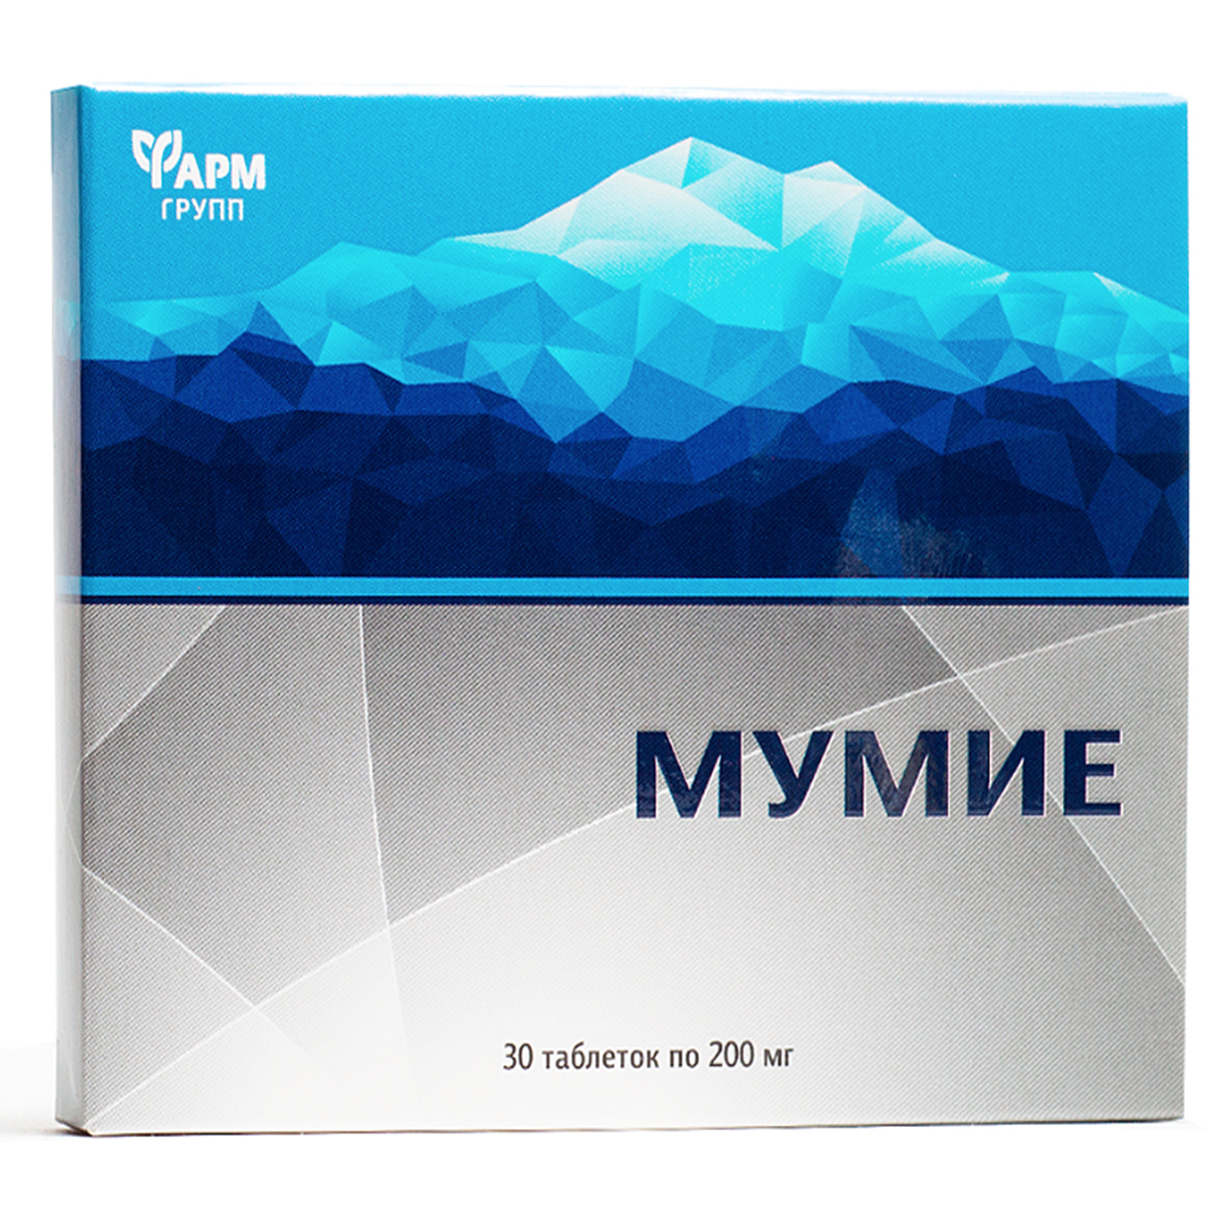 Мумие — 0,2 (коробочка), 30 таб